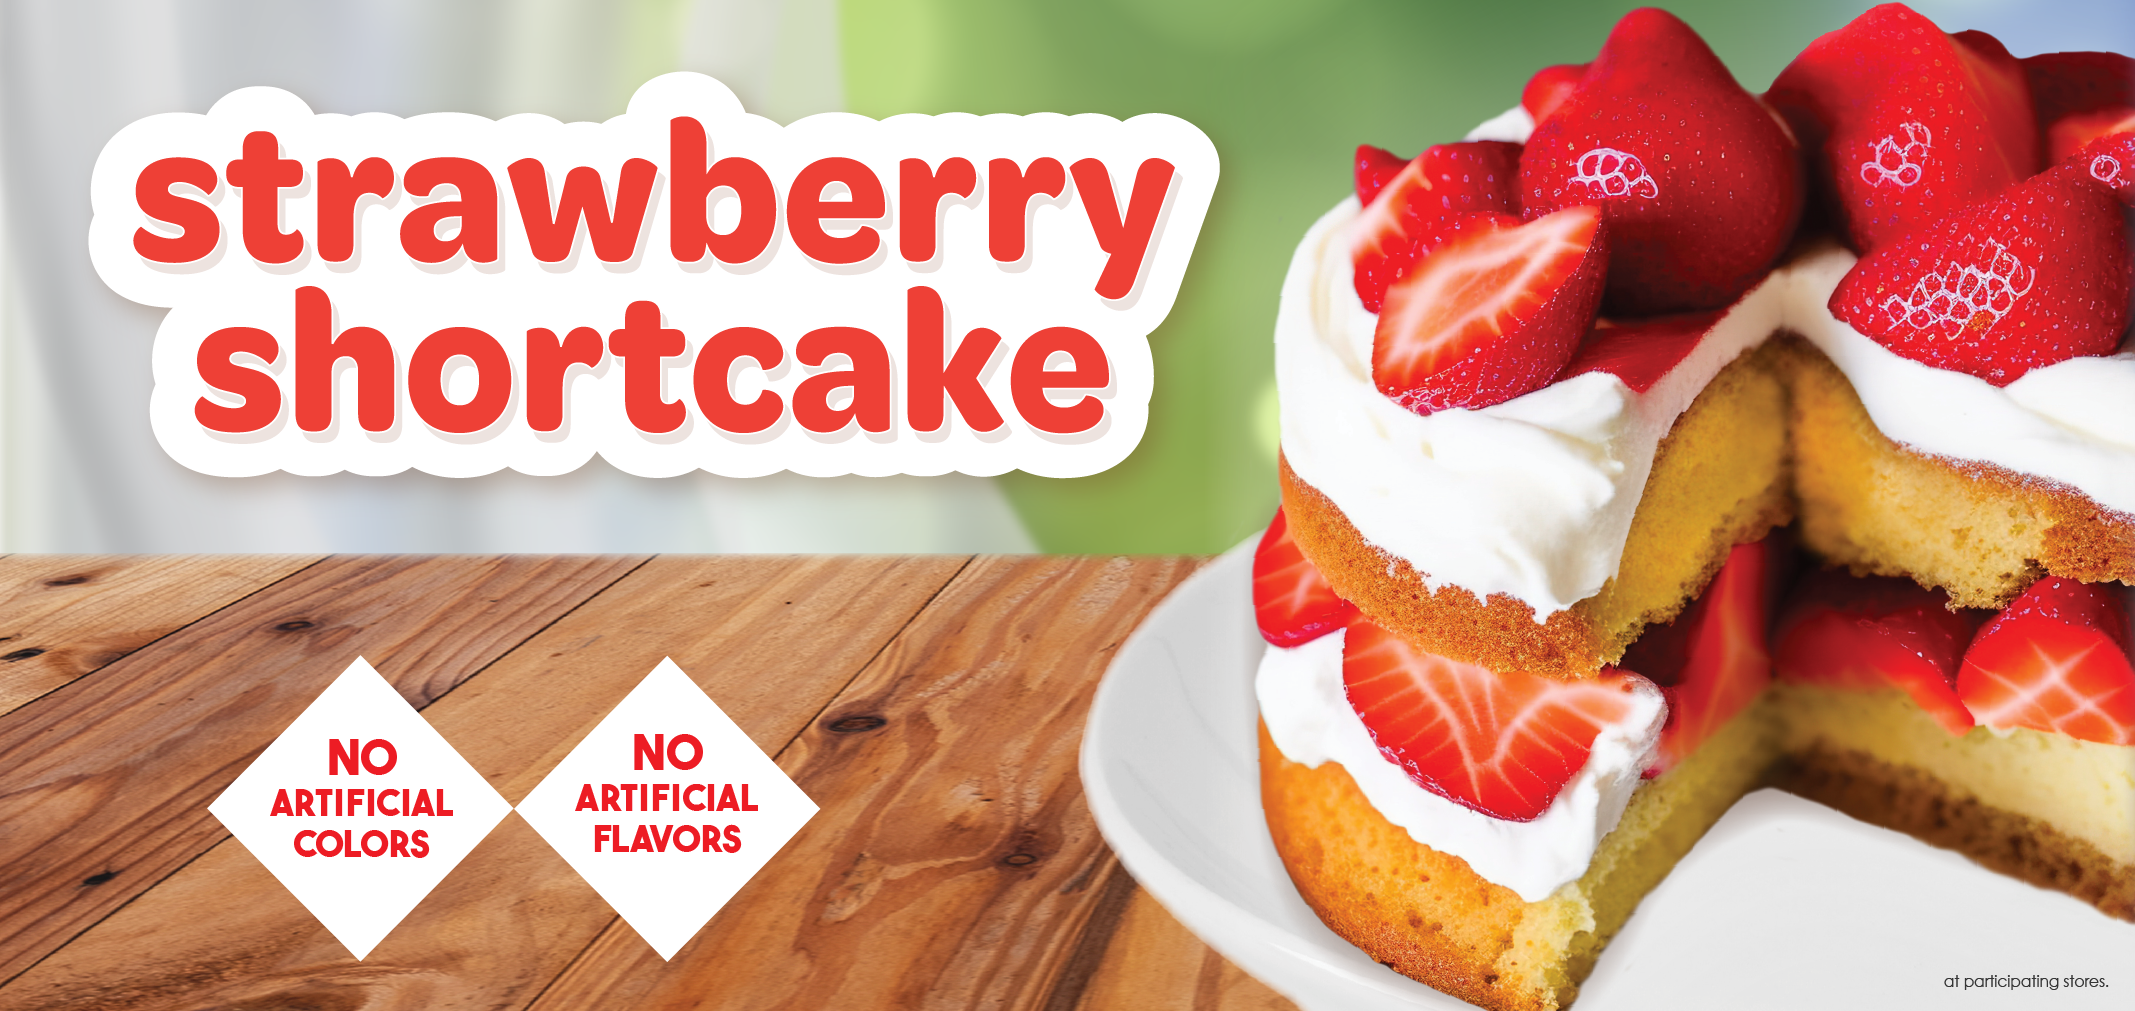 Strawberry Shortcake label image